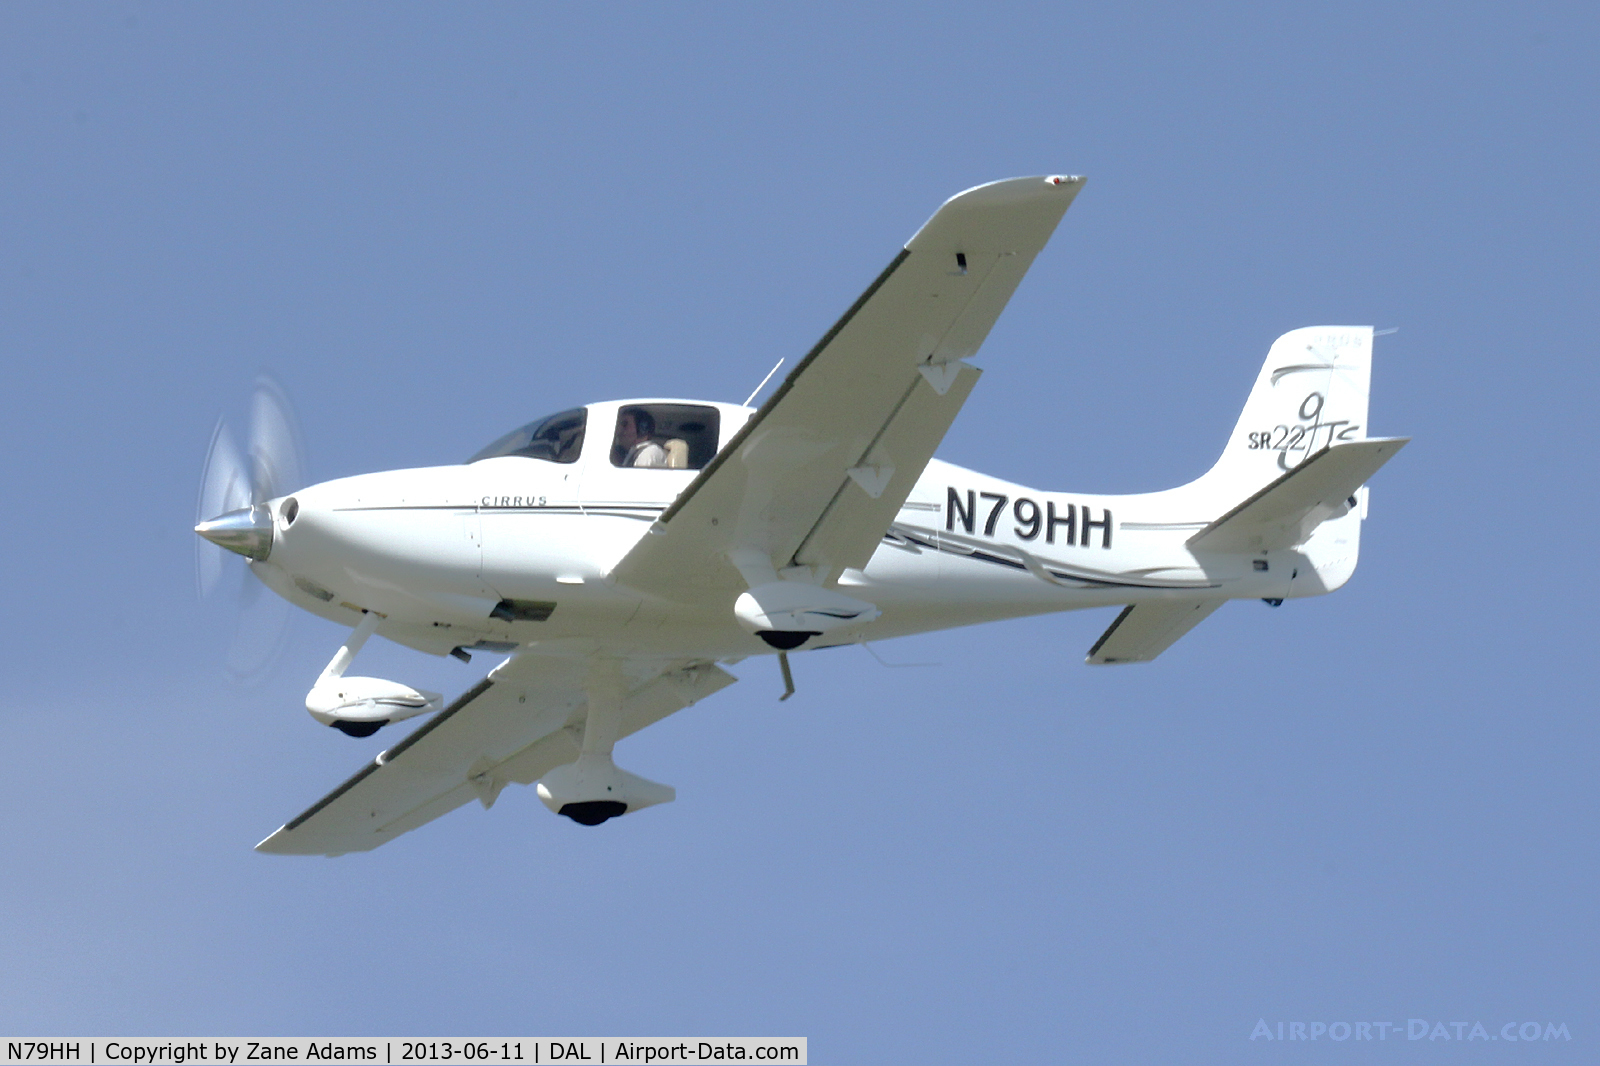 N79HH, 2006 Cirrus SR22 C/N 2282, Landing at Dallas Love Field